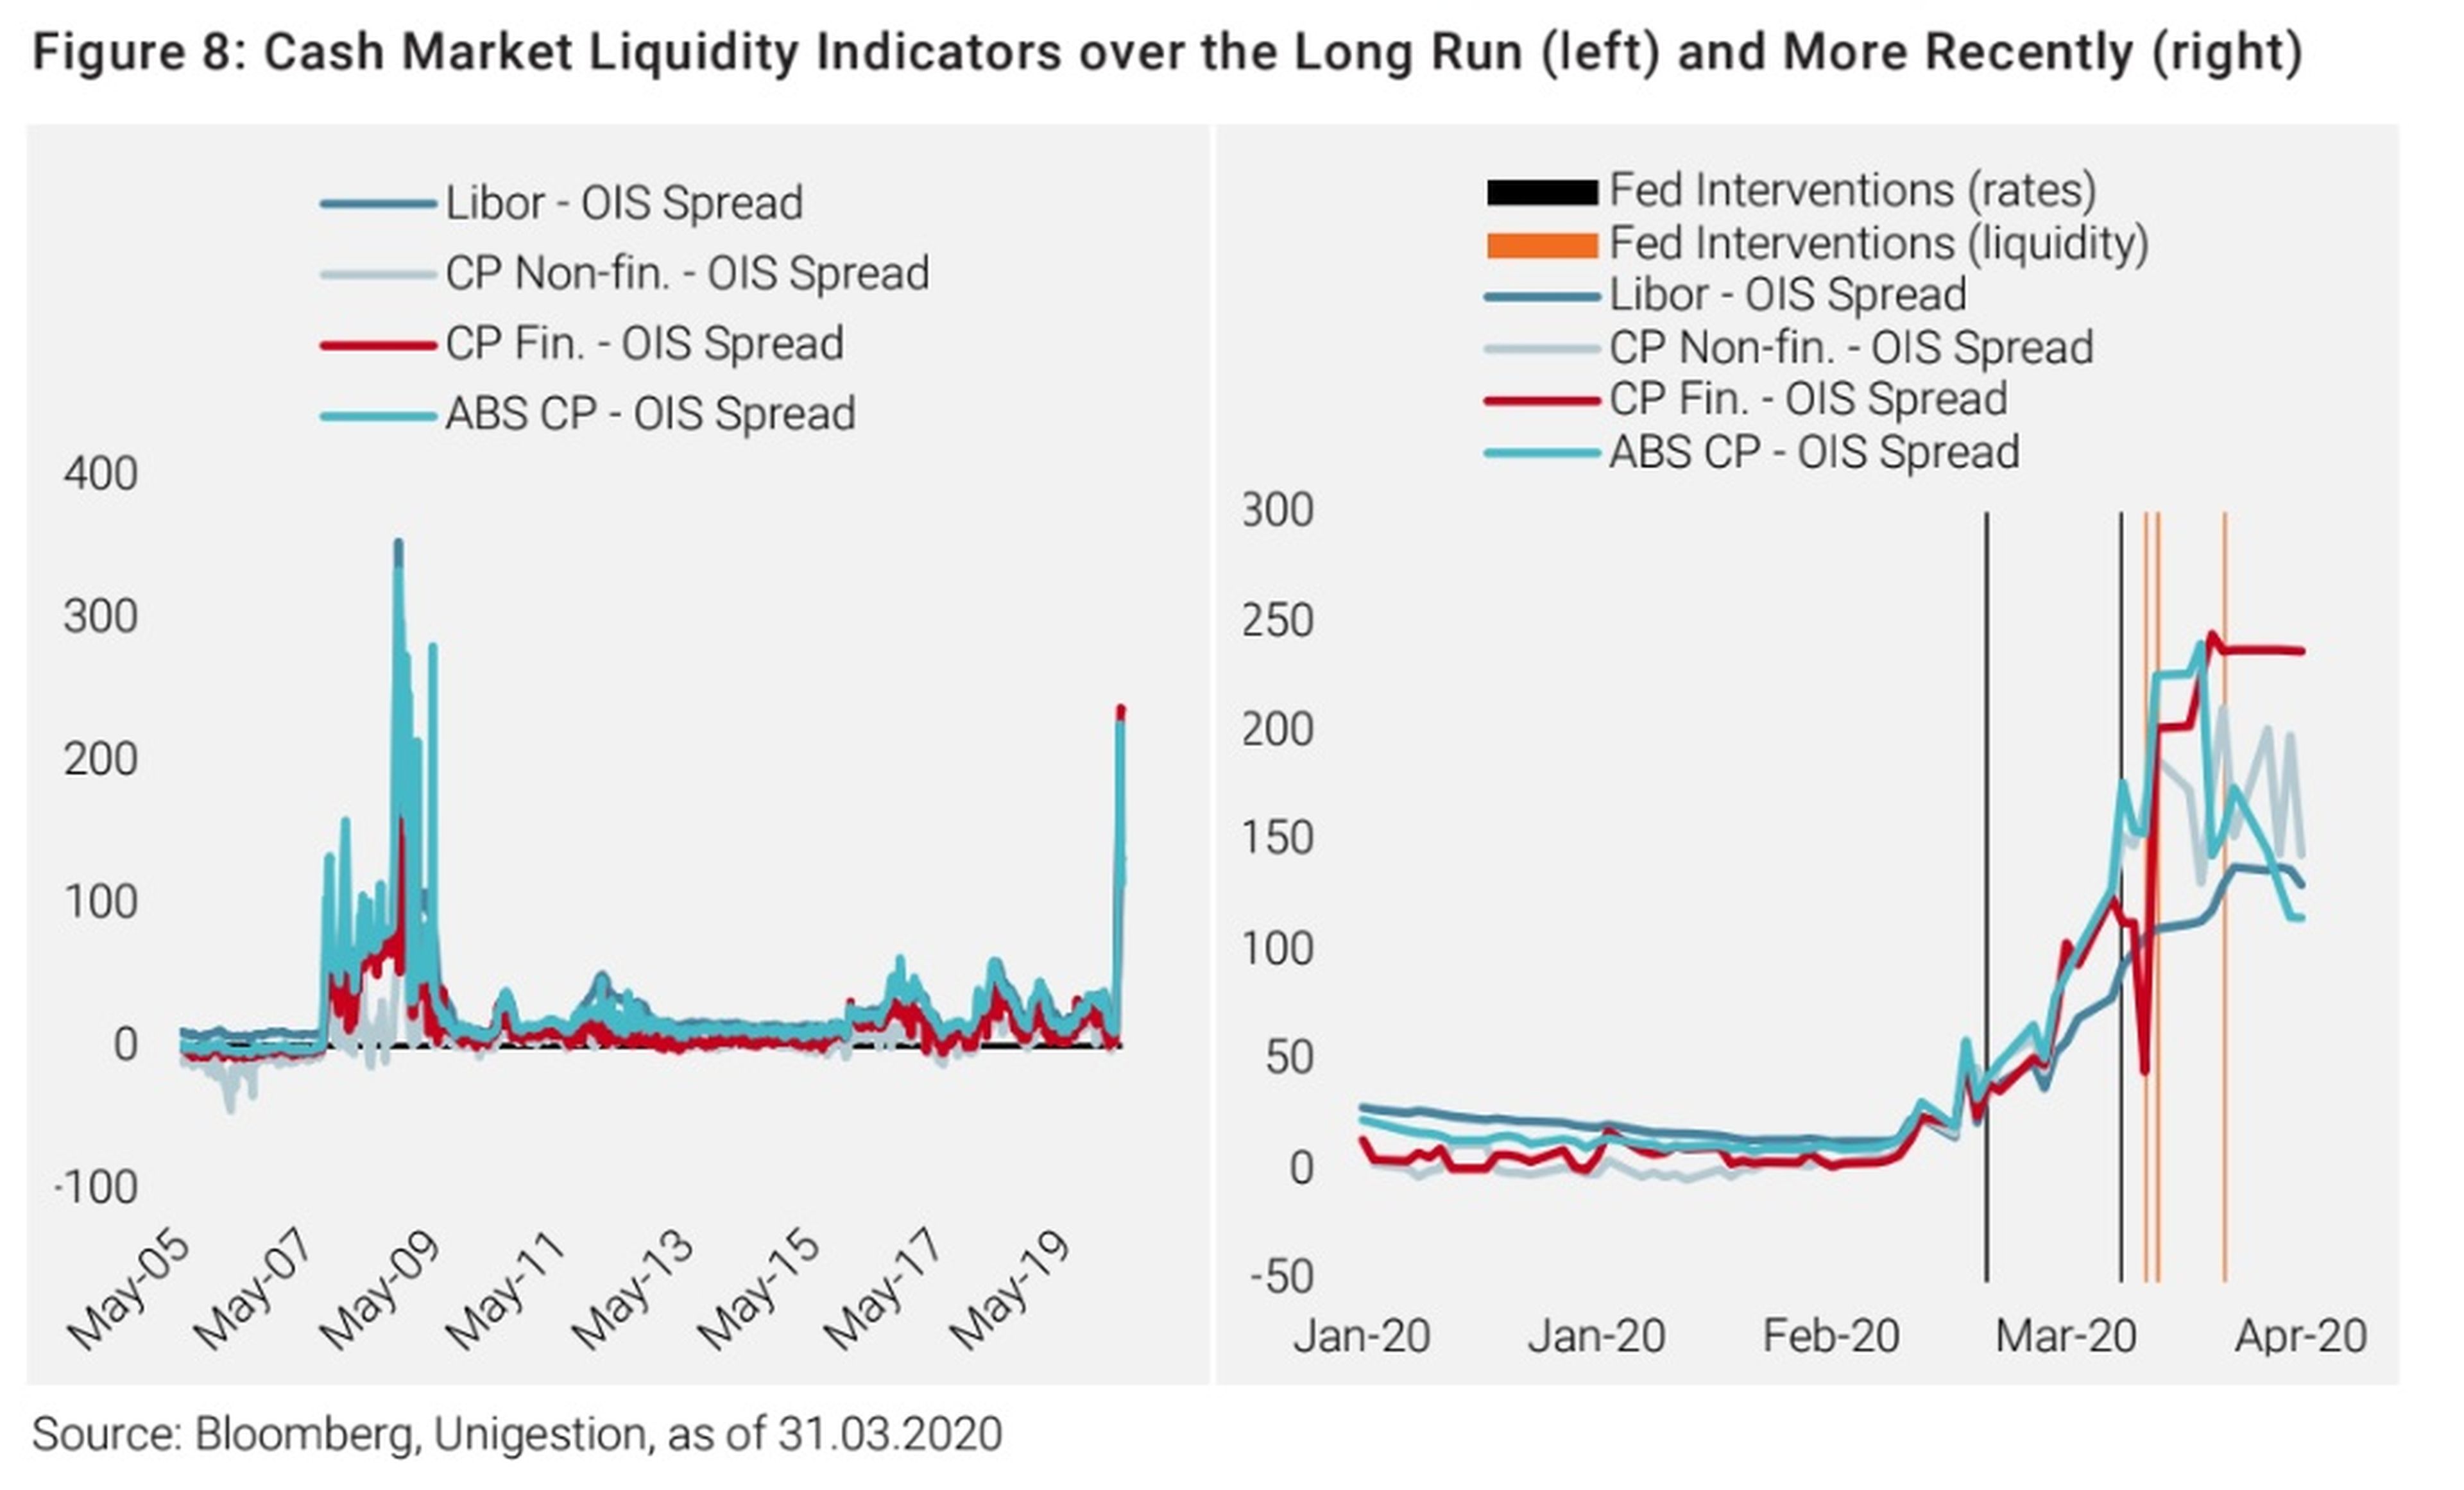 Indicador sobre la liquidez en los mercados en el largo plazo en comparación con la actualidad.